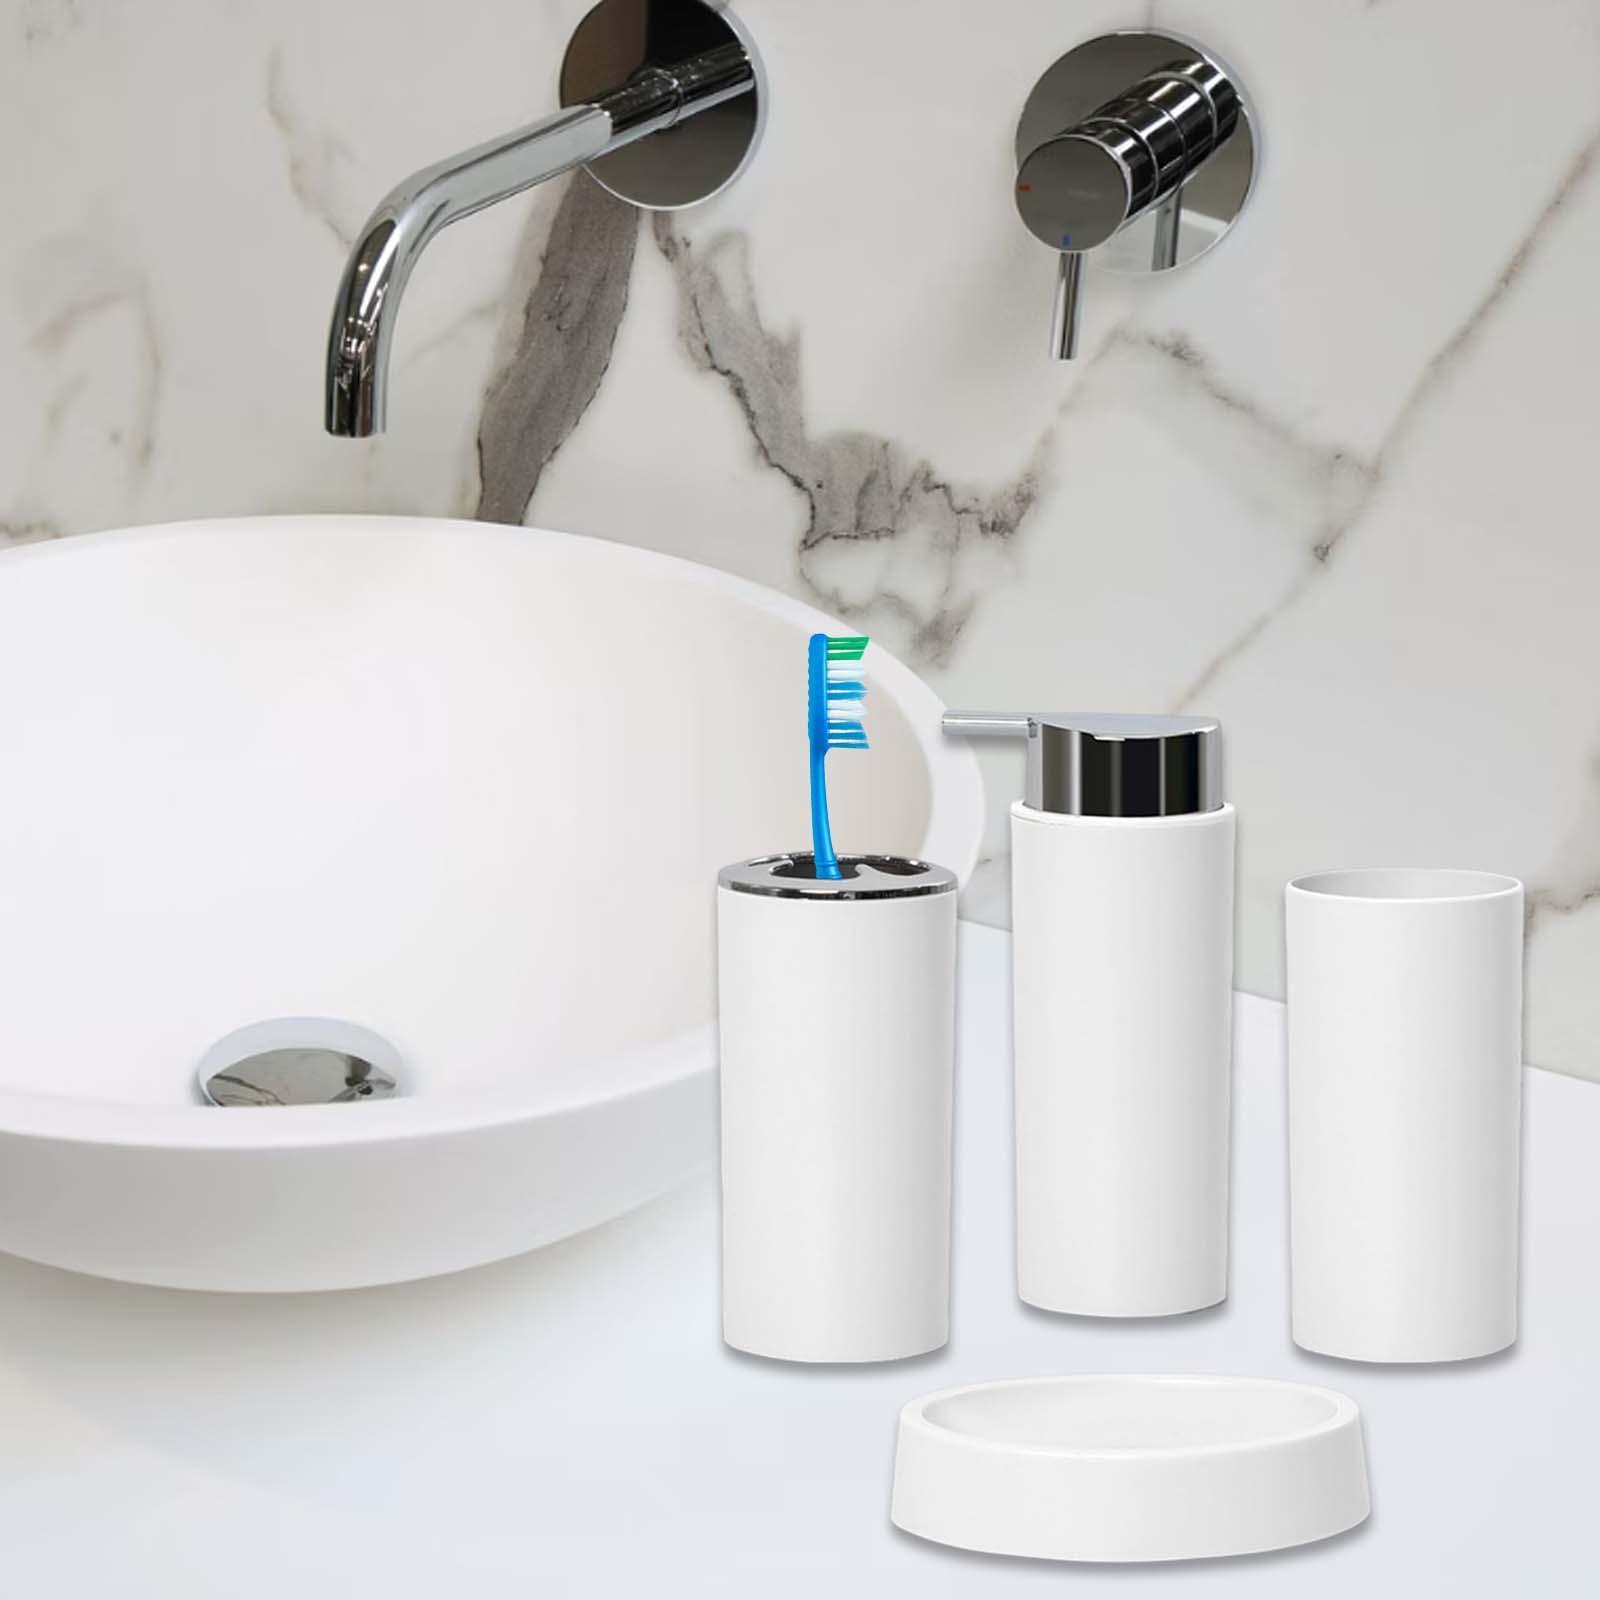 4 Pieces  Bathroom Accessories Set for Countertop Bathroom Toilet